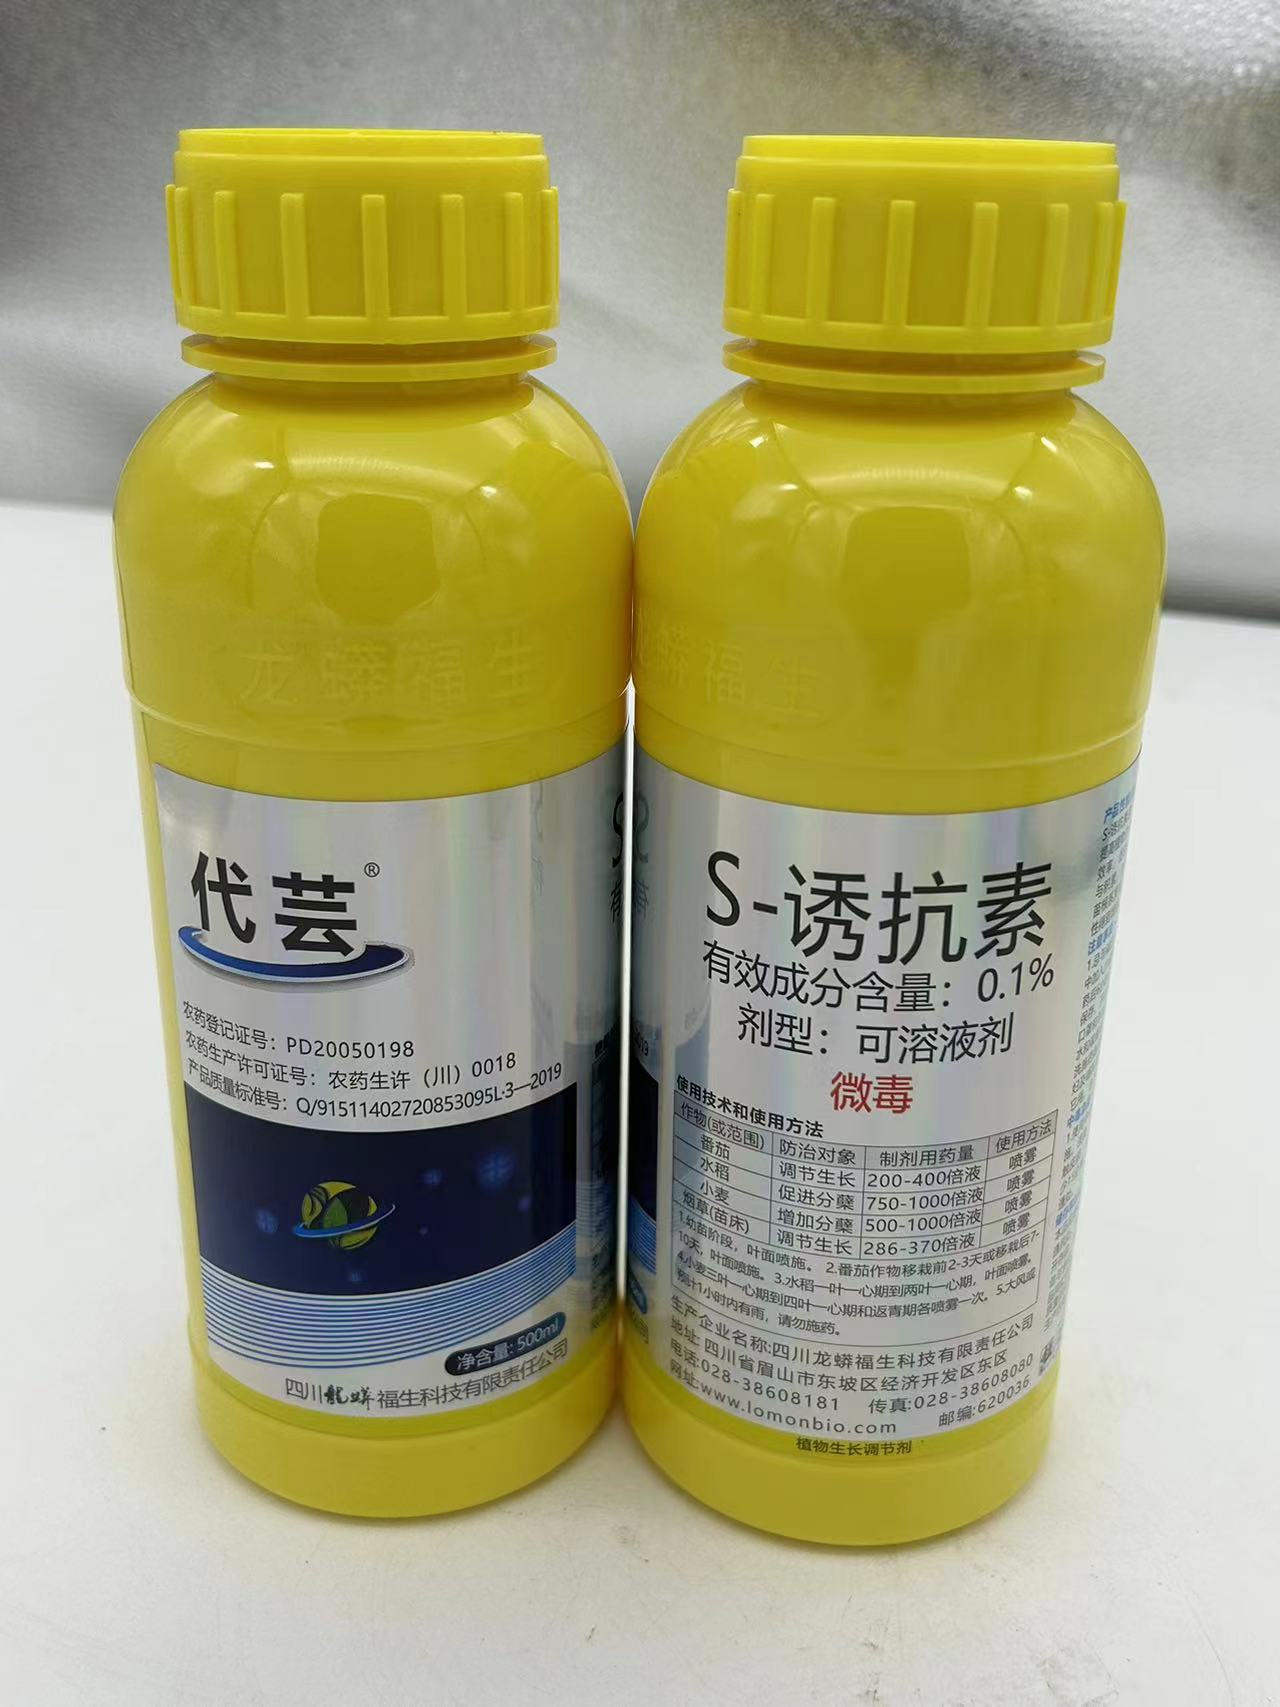 龙蟒福生代芸0.1%S-诱抗素葡萄柑橘着色转色专用